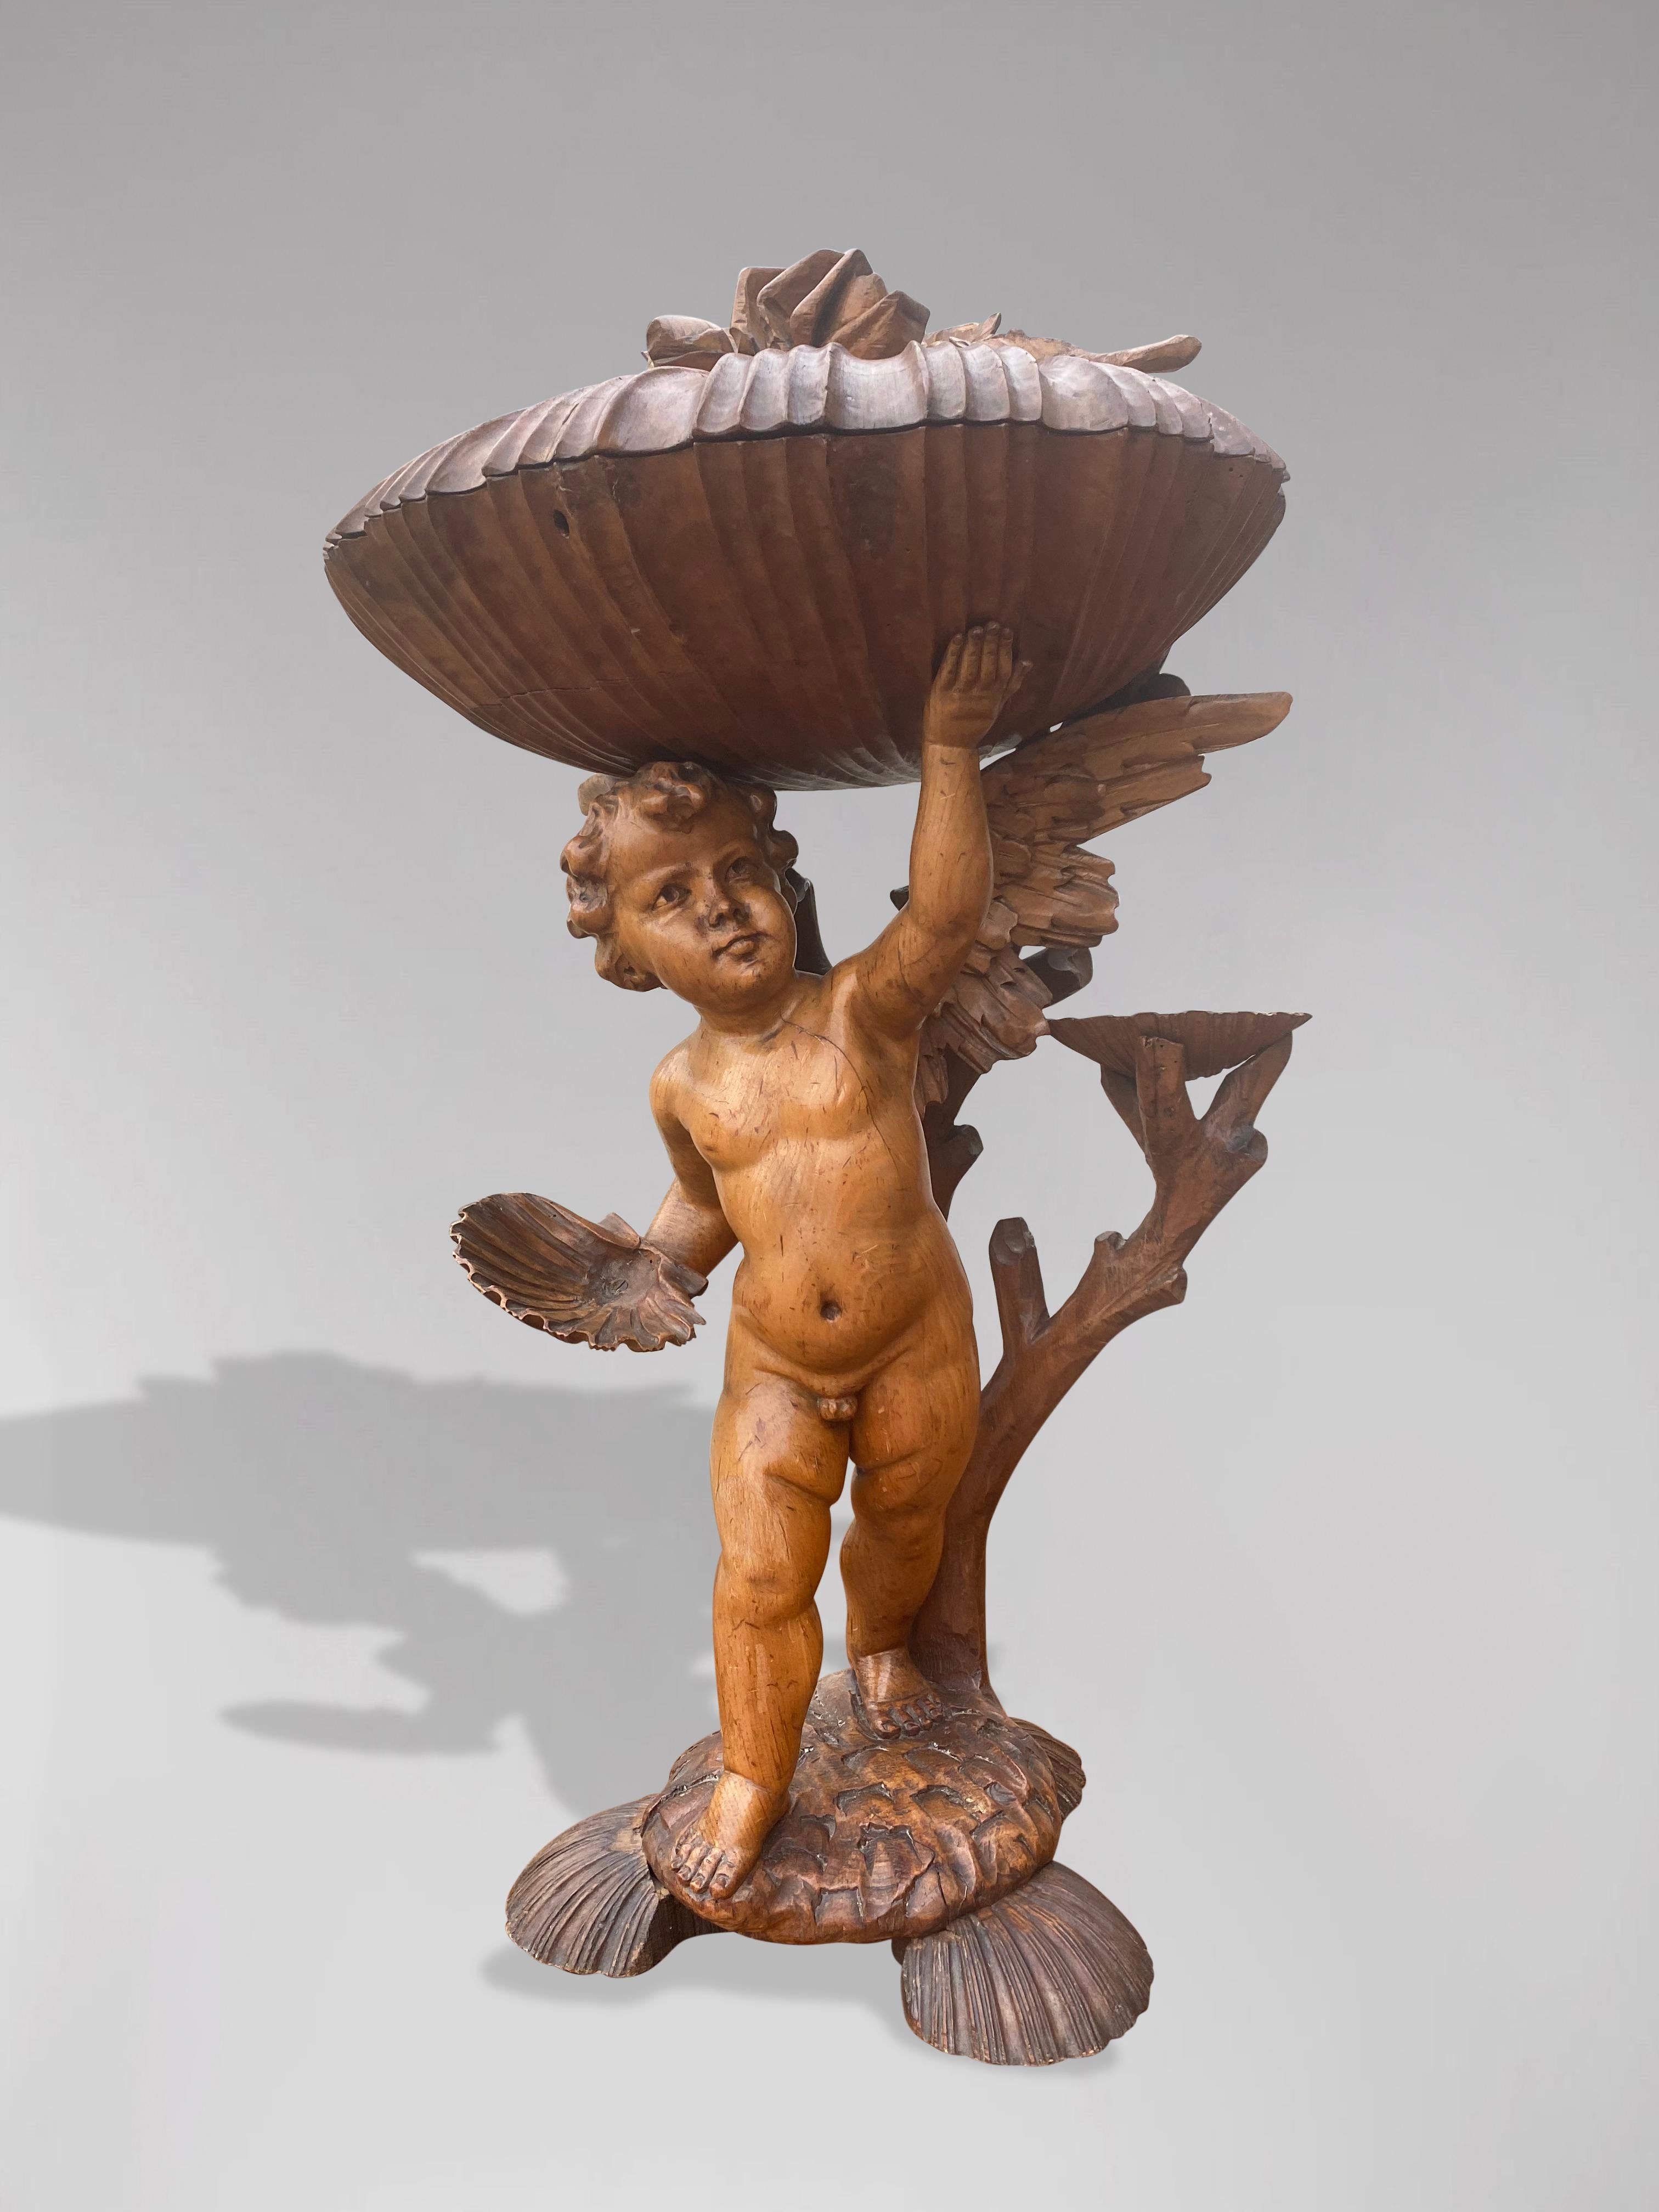 Statue de putti de grande taille, de style baroque italien, datant du 19e siècle, représentant un chérubin ailé, avec une branche, plusieurs coquilles Saint-Jacques plus petites et tenant une grande coquille Saint-Jacques sculptée avec des détails